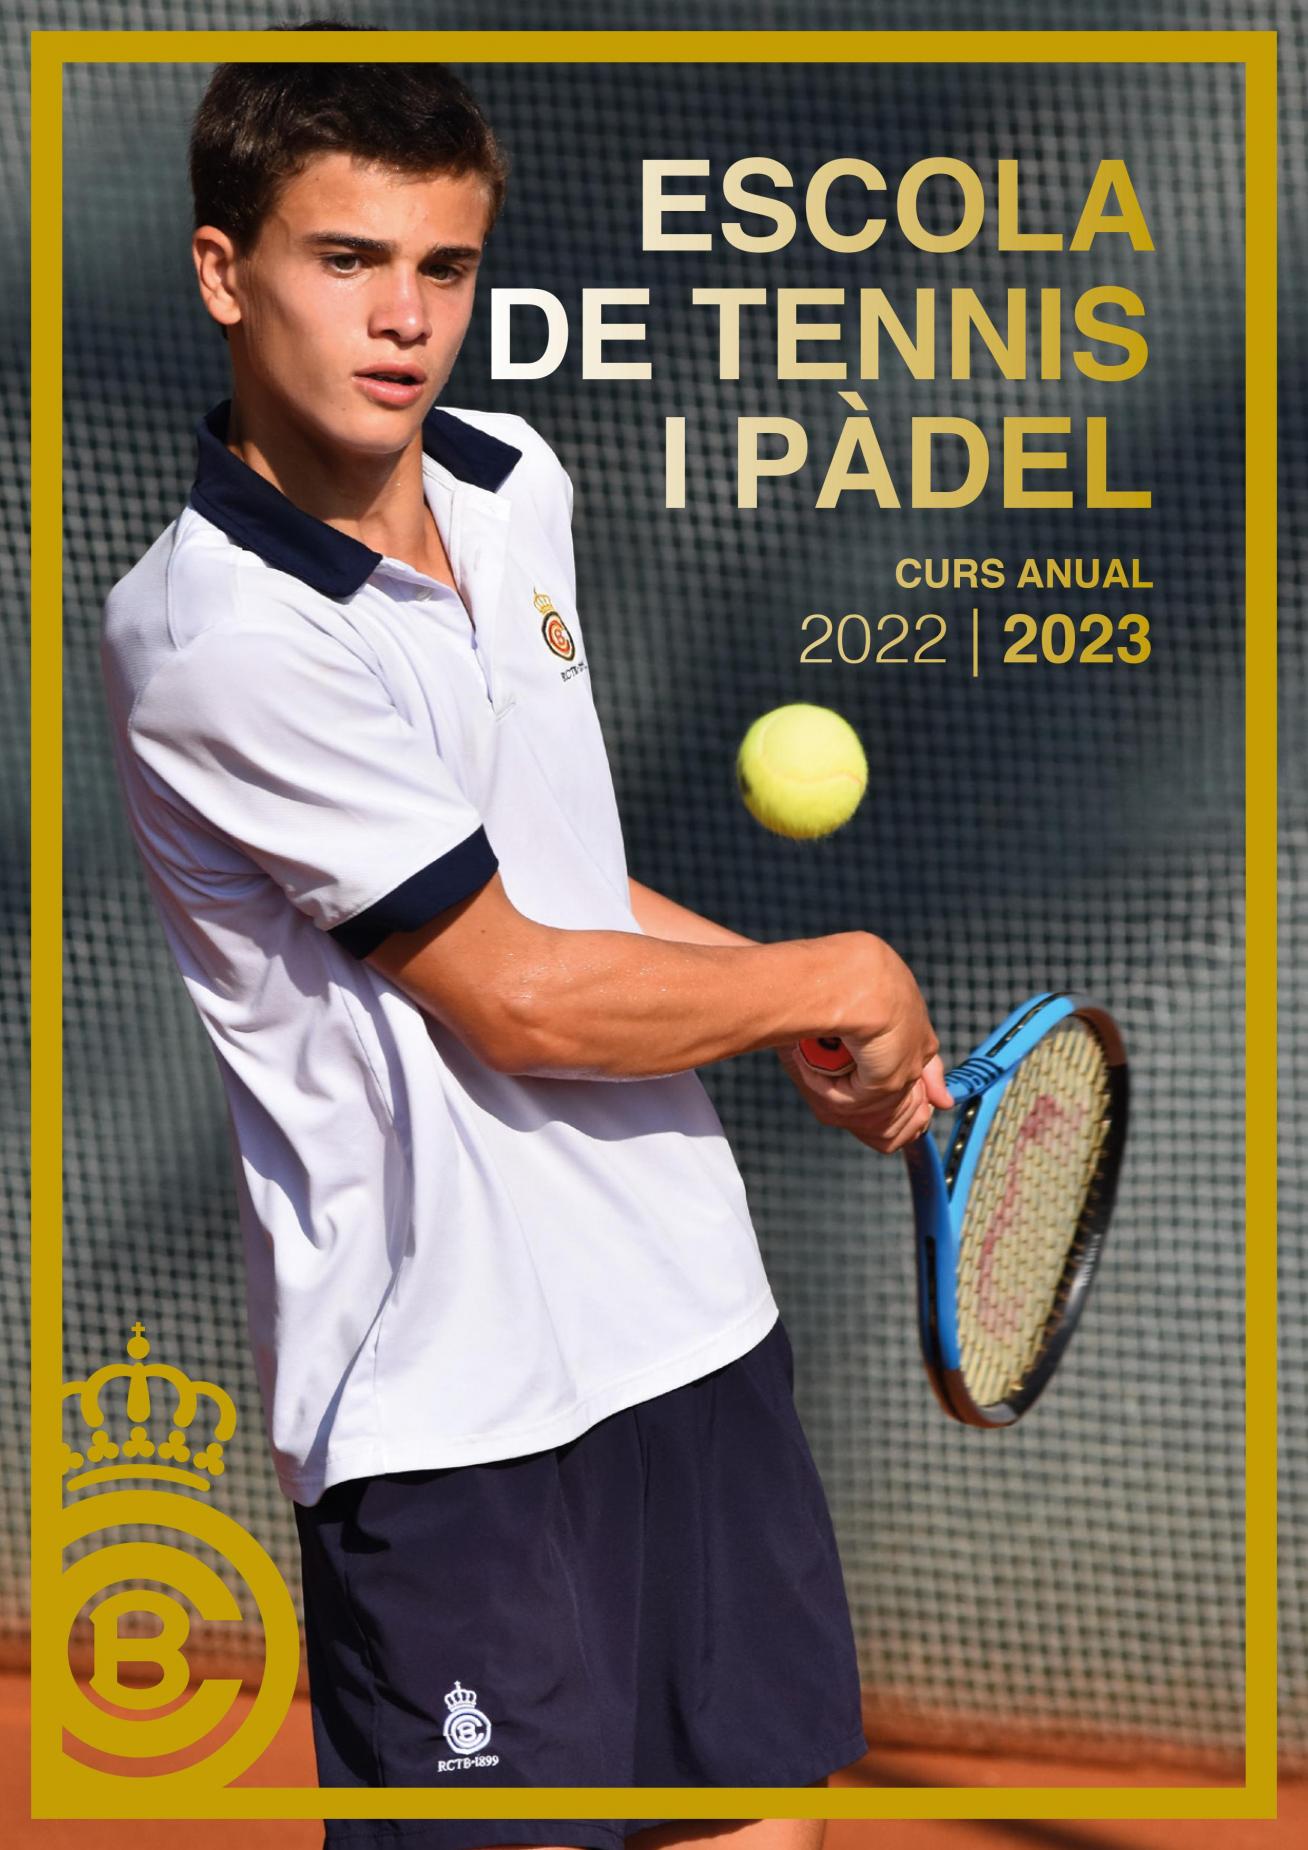 Curso anual de la Escuela de Tenis y Pádel 2022/23